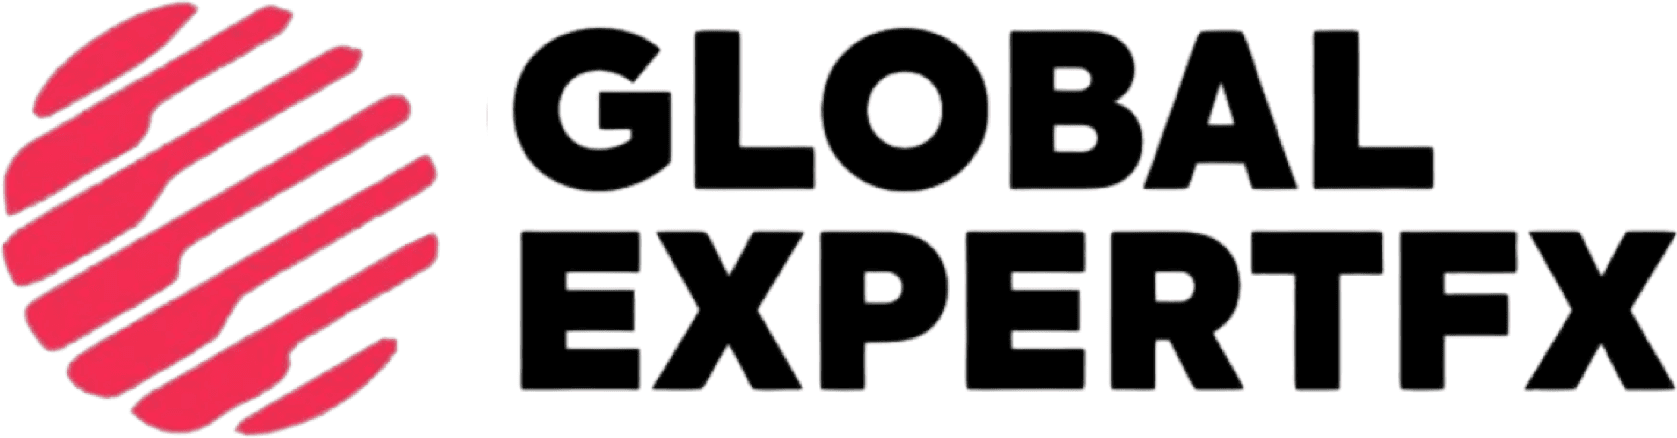 globalbinaryexpertsfx